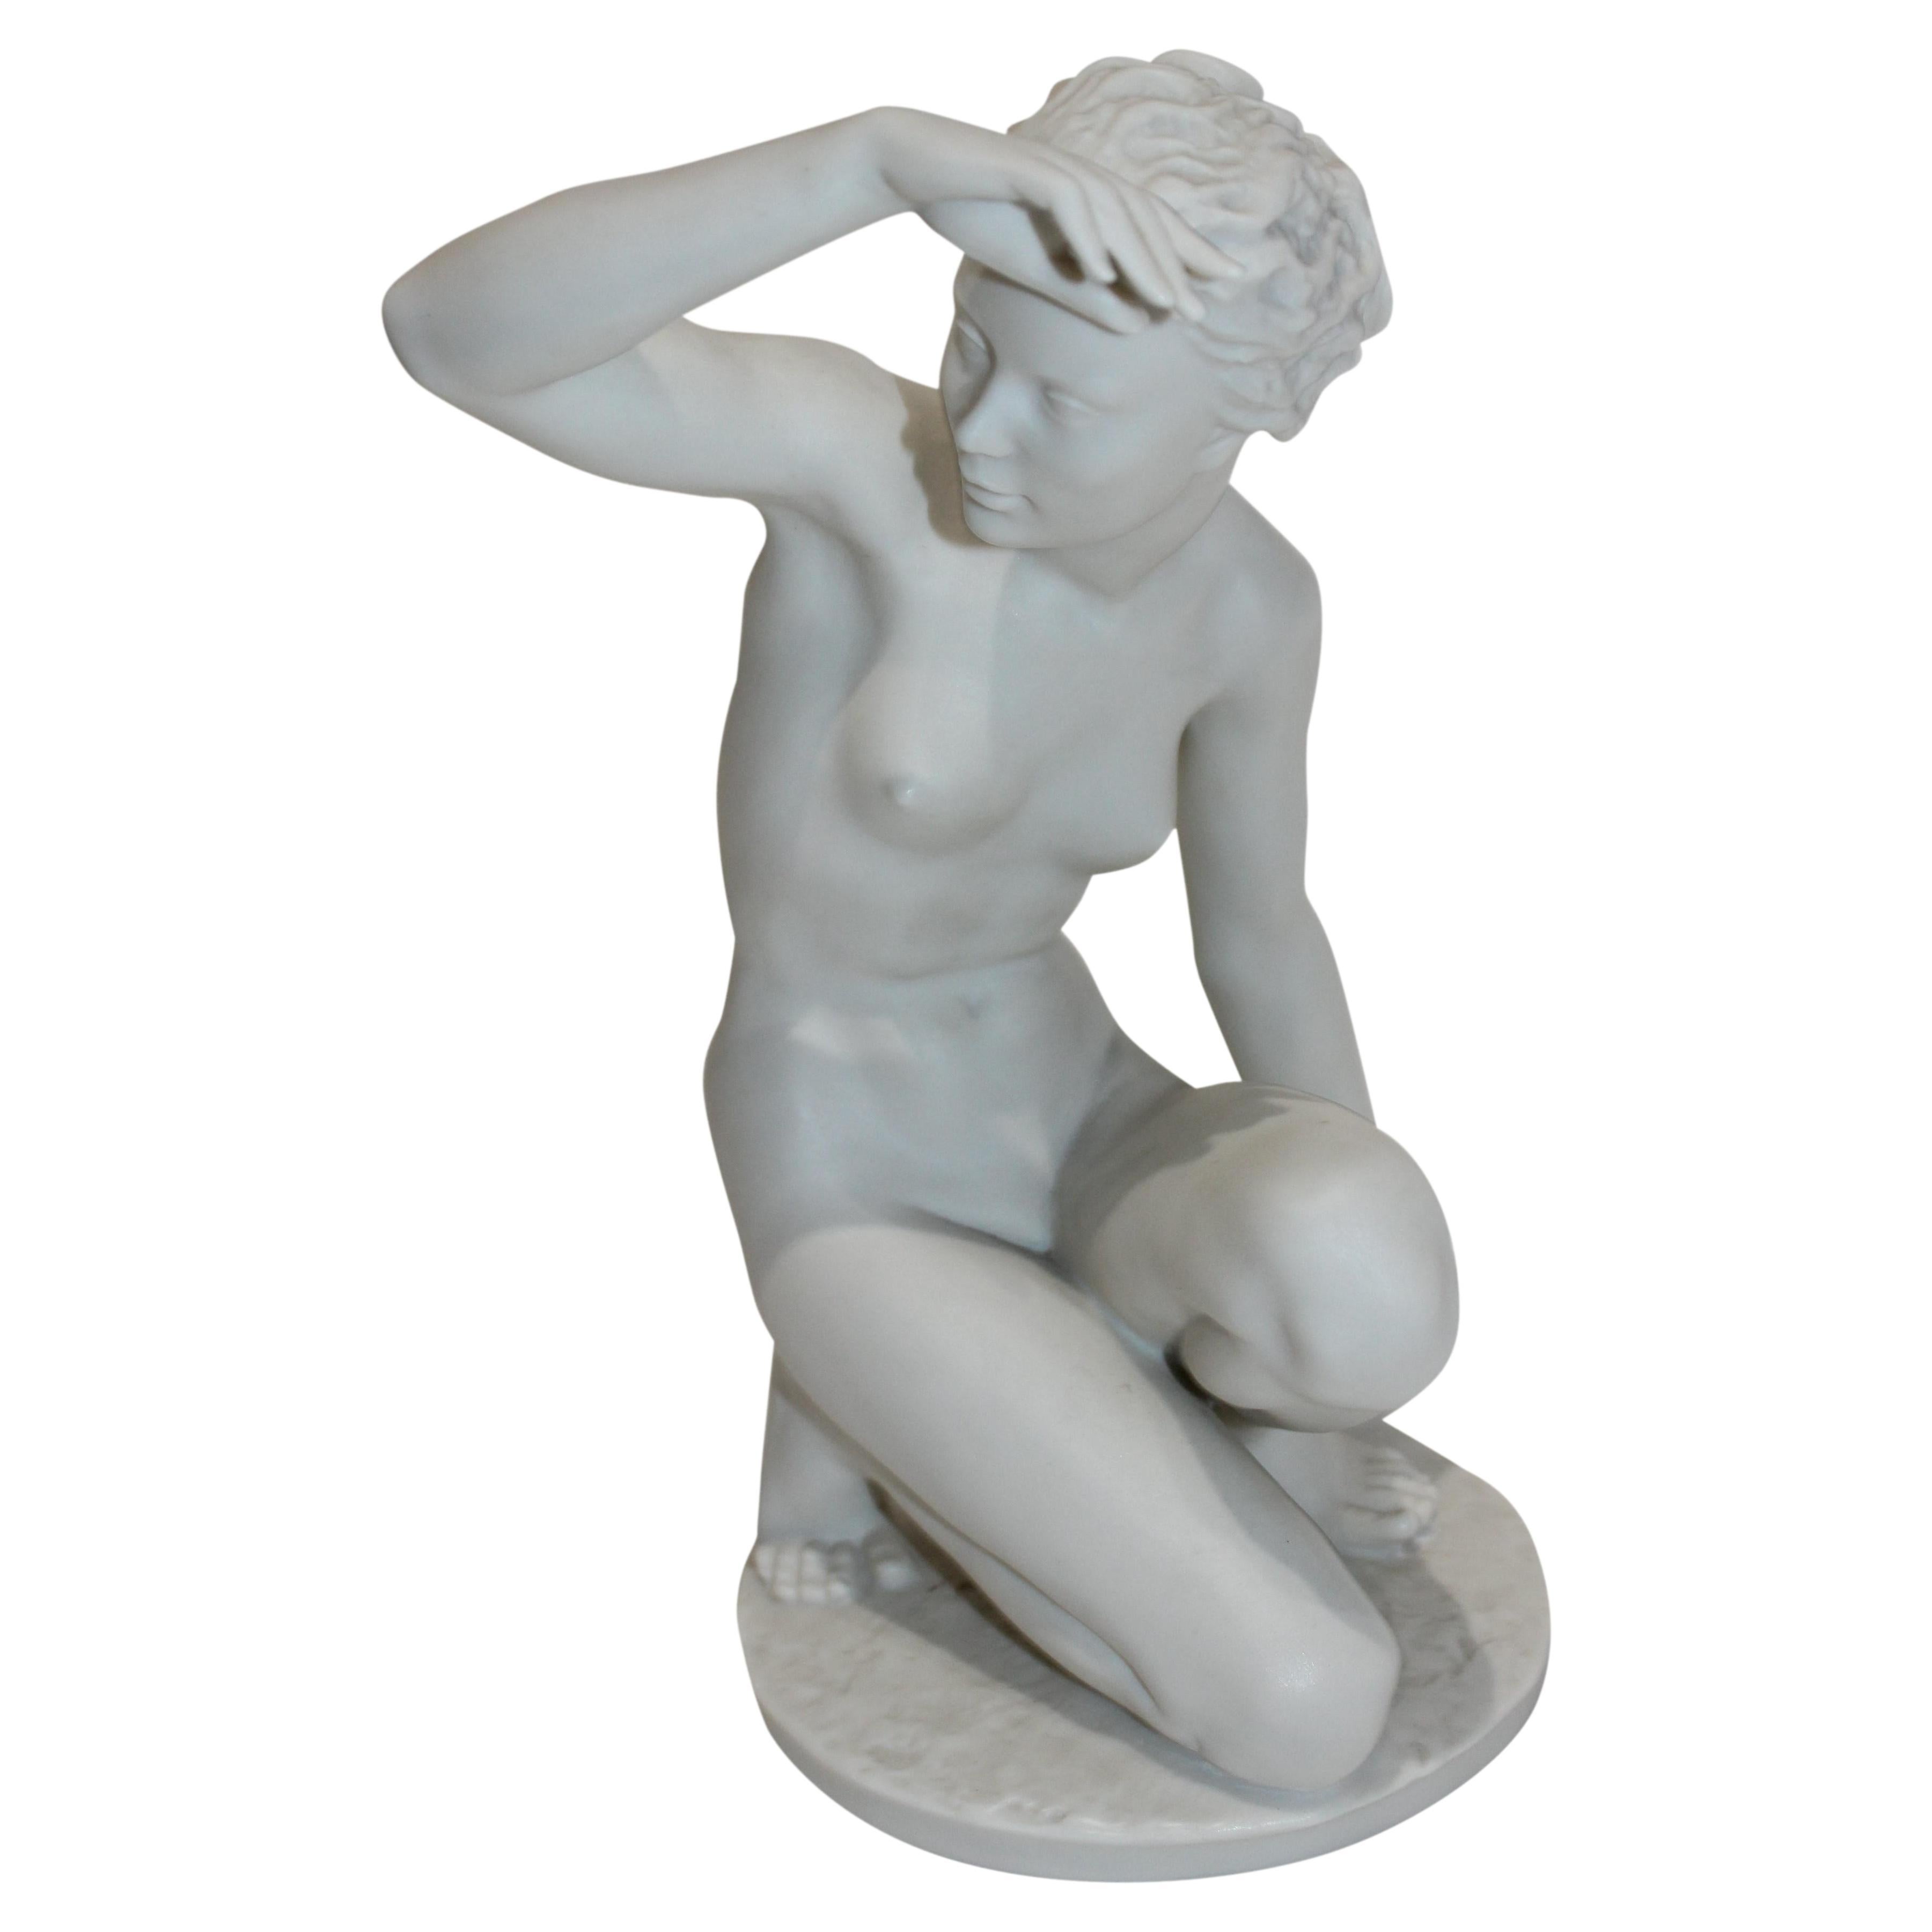 Bisque Figure of a Female Nude by Lorenz Hutschenreutner